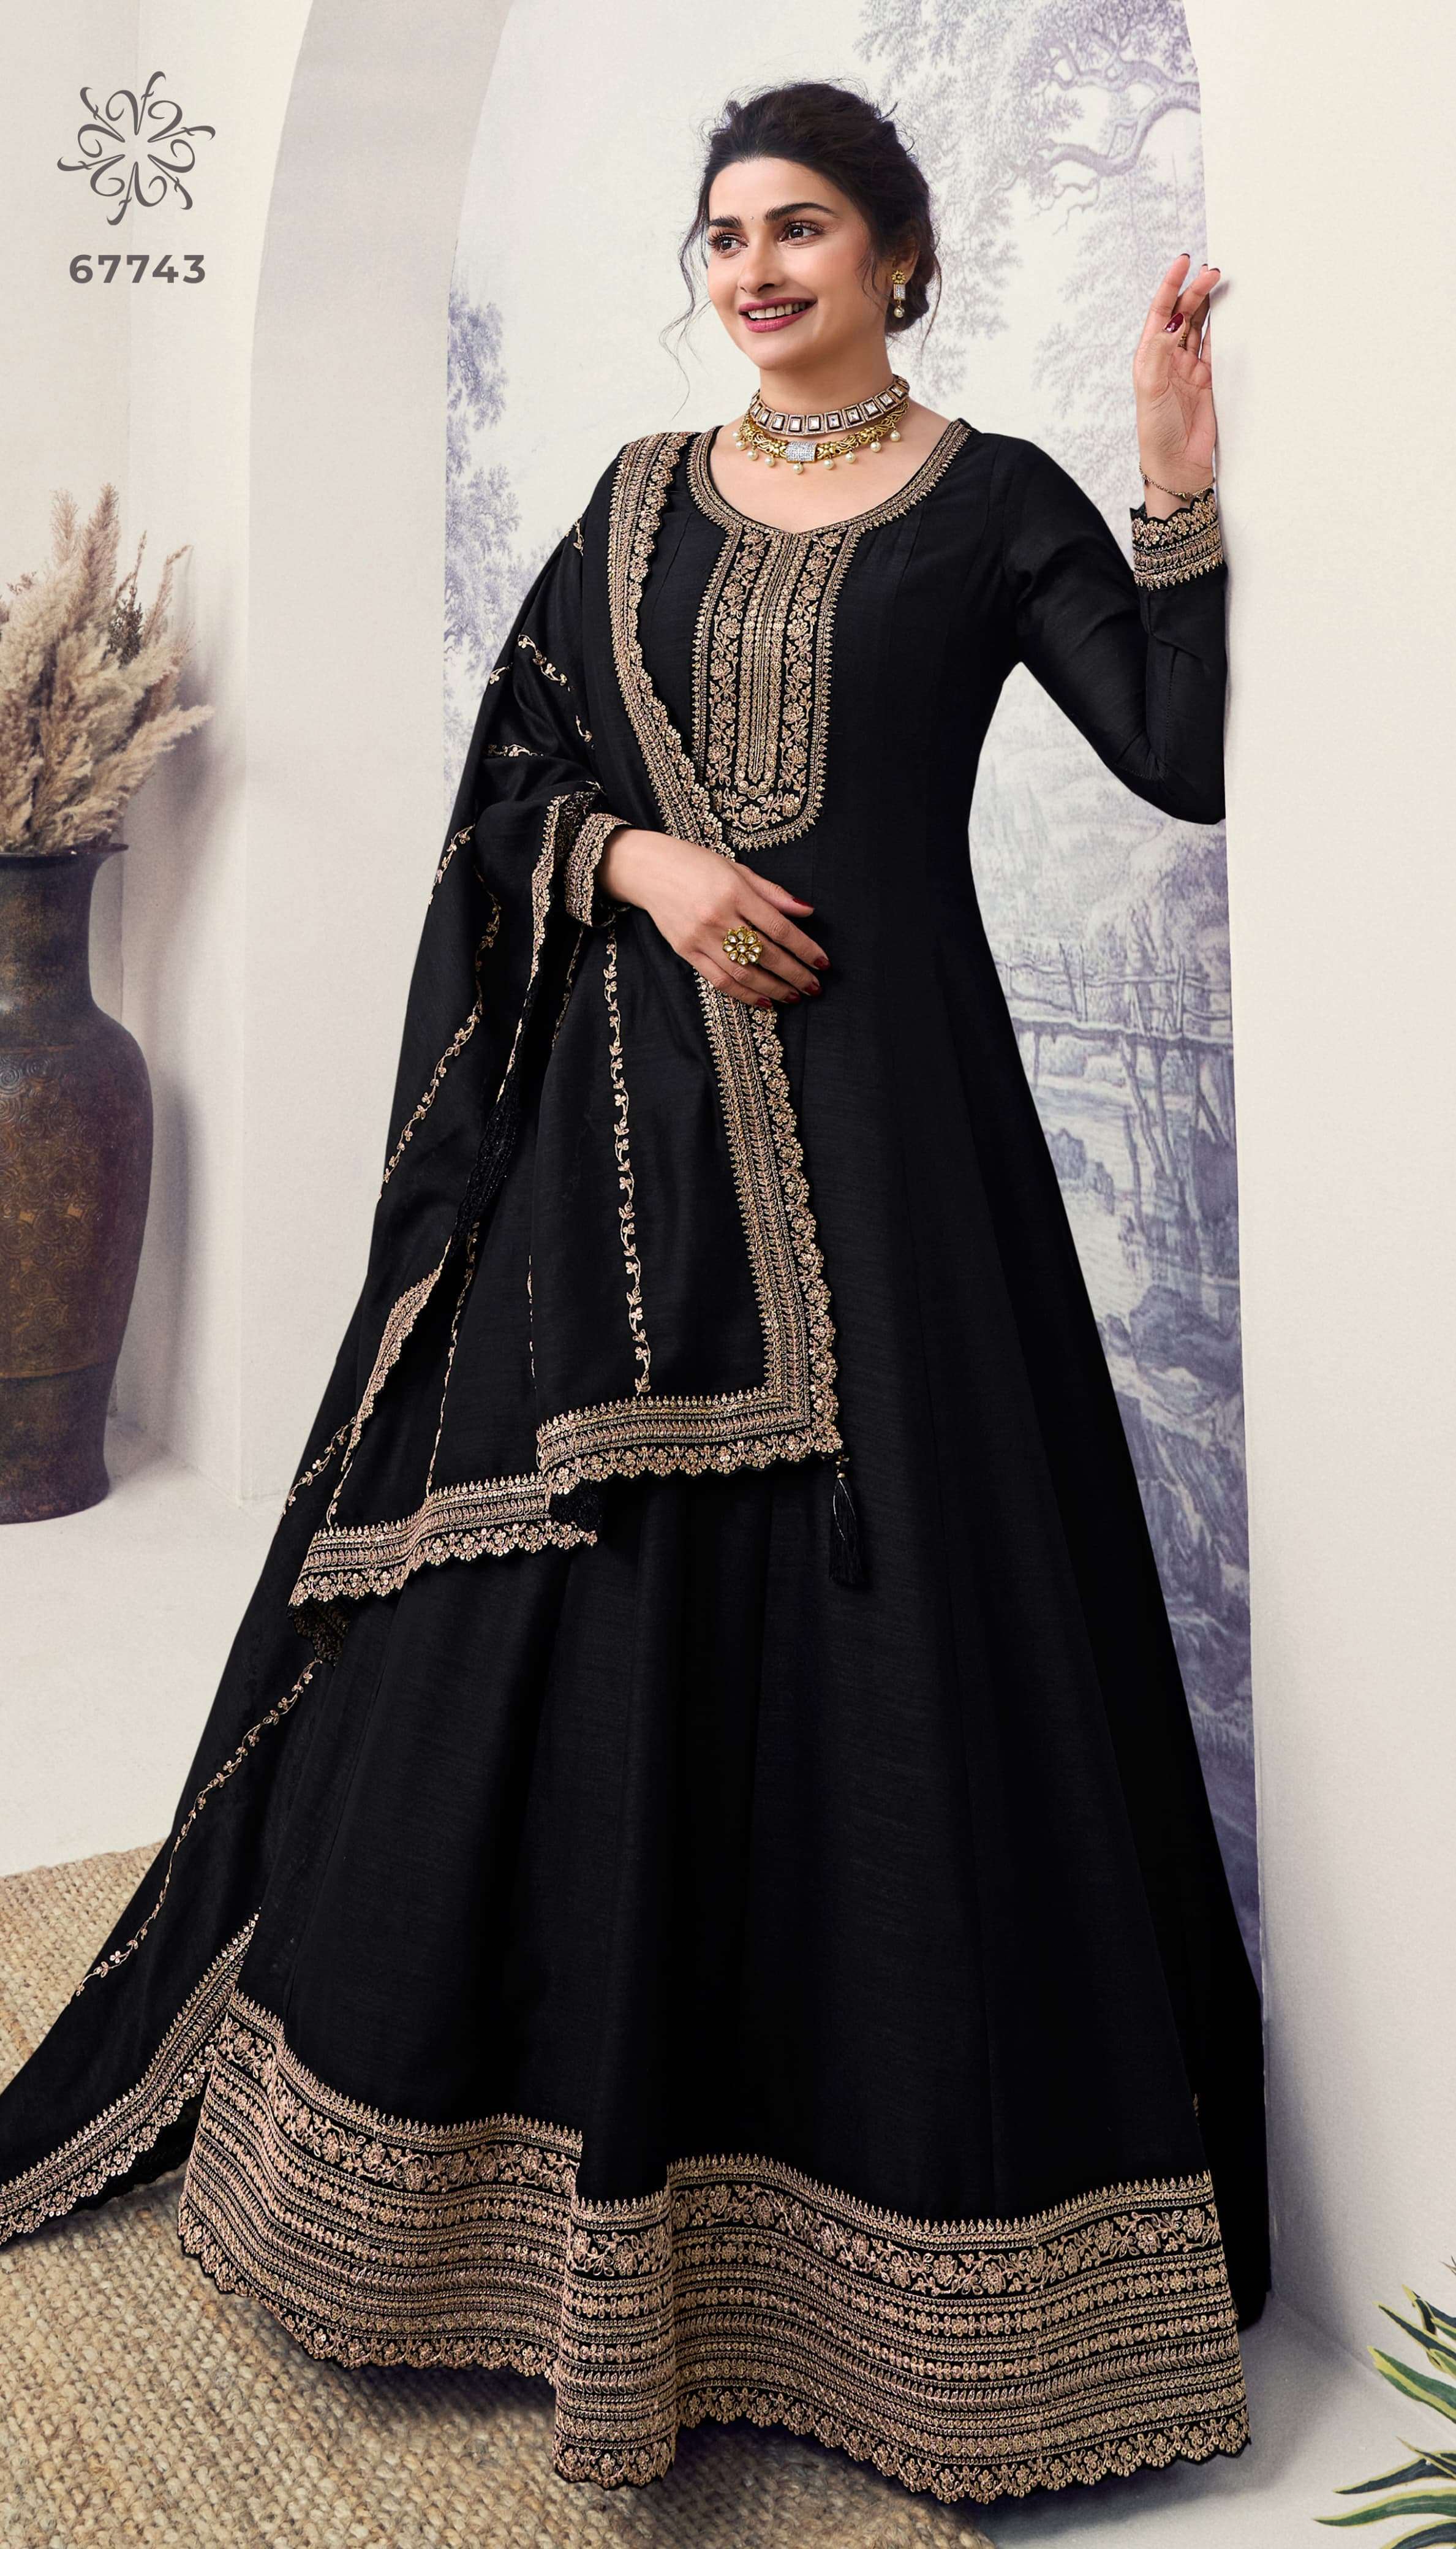 Vinay Kuleesh Aaliya 2 Georgette Pakistani Dress material manufacturers